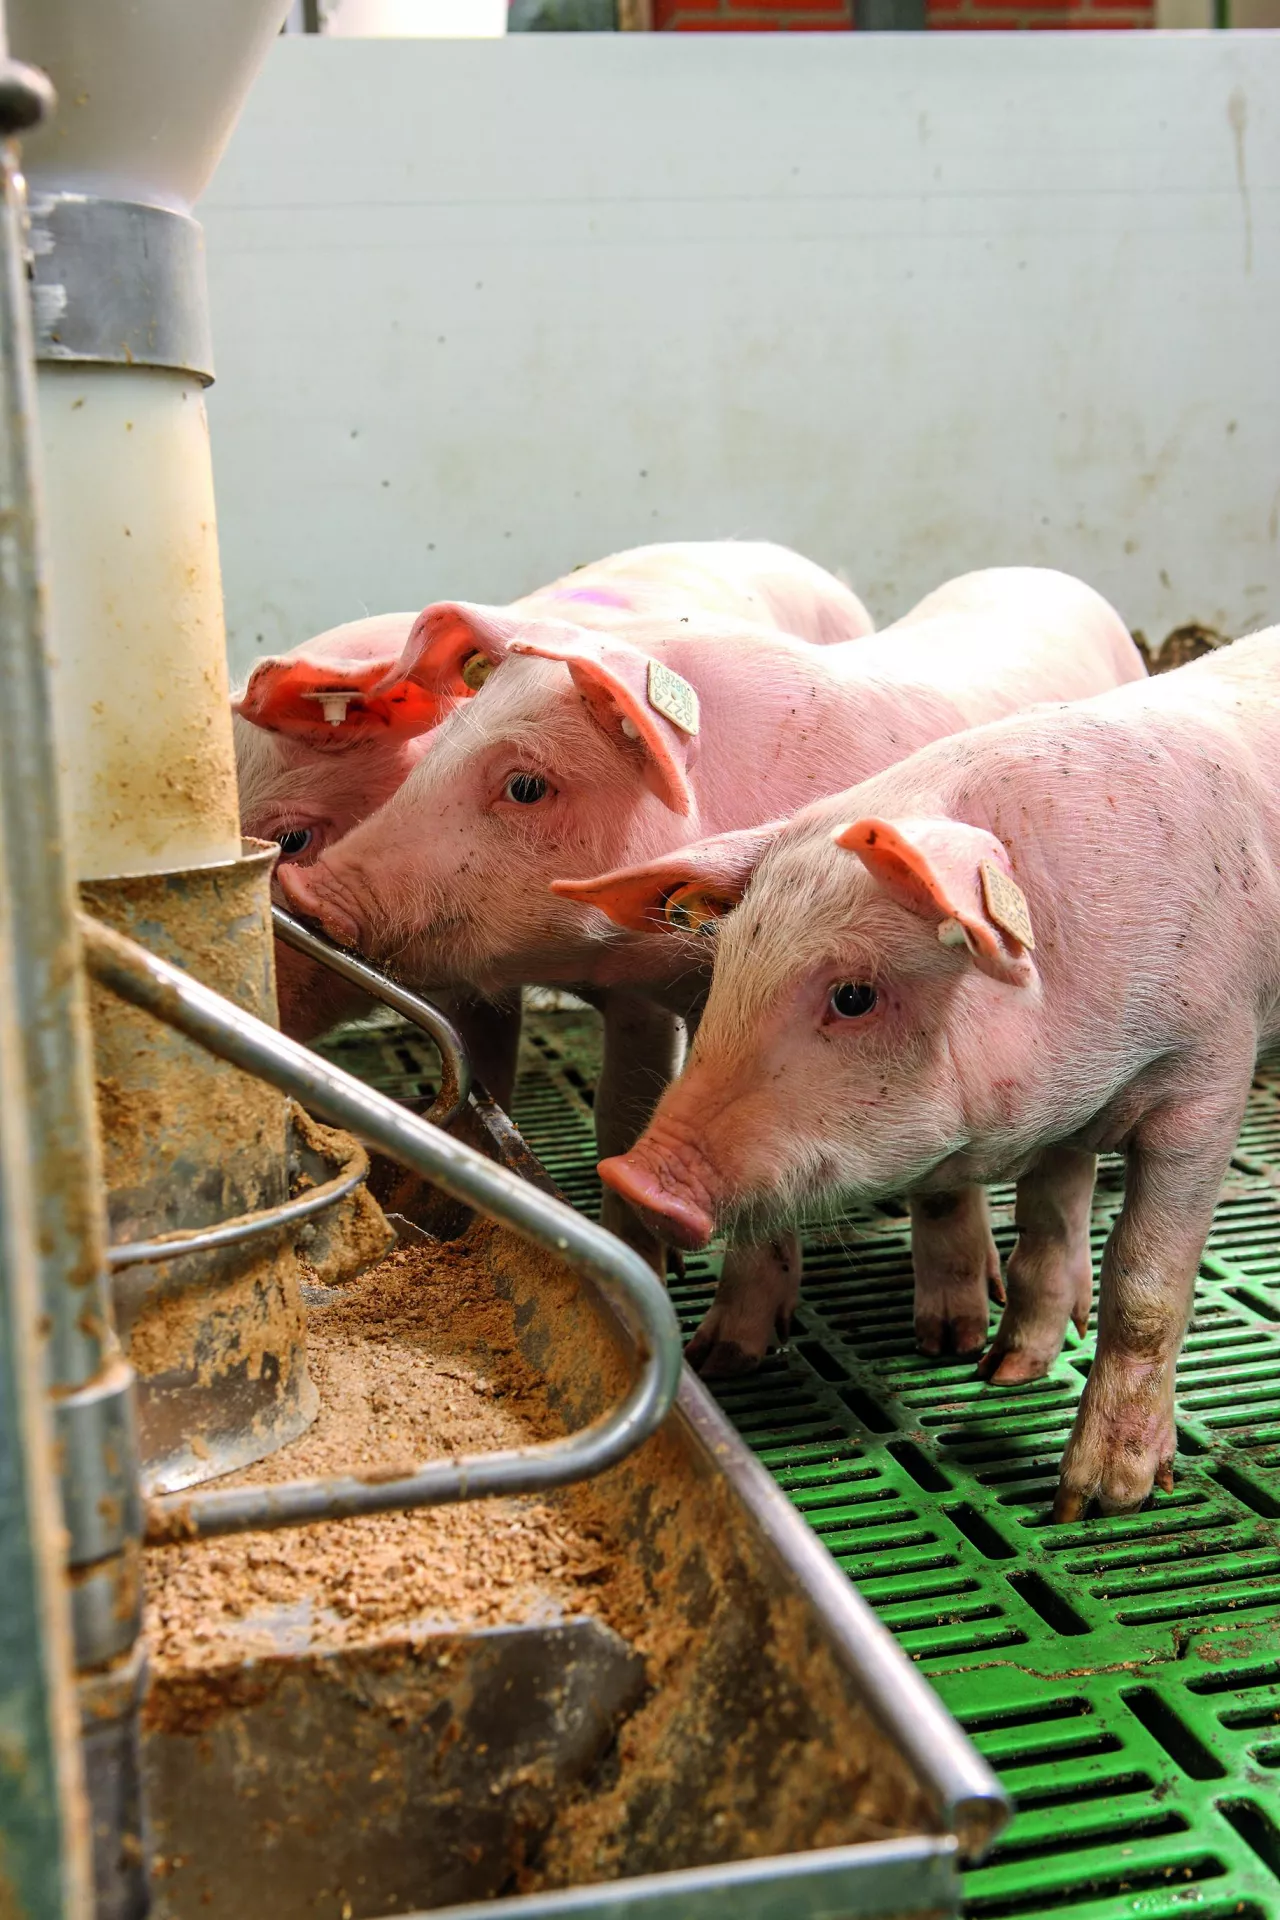 &lt;p&gt;Świnie lubią smak mięsa, dlatego powstała koncepcja żywienia ich białkiem zwierzęcym.&lt;/p&gt;